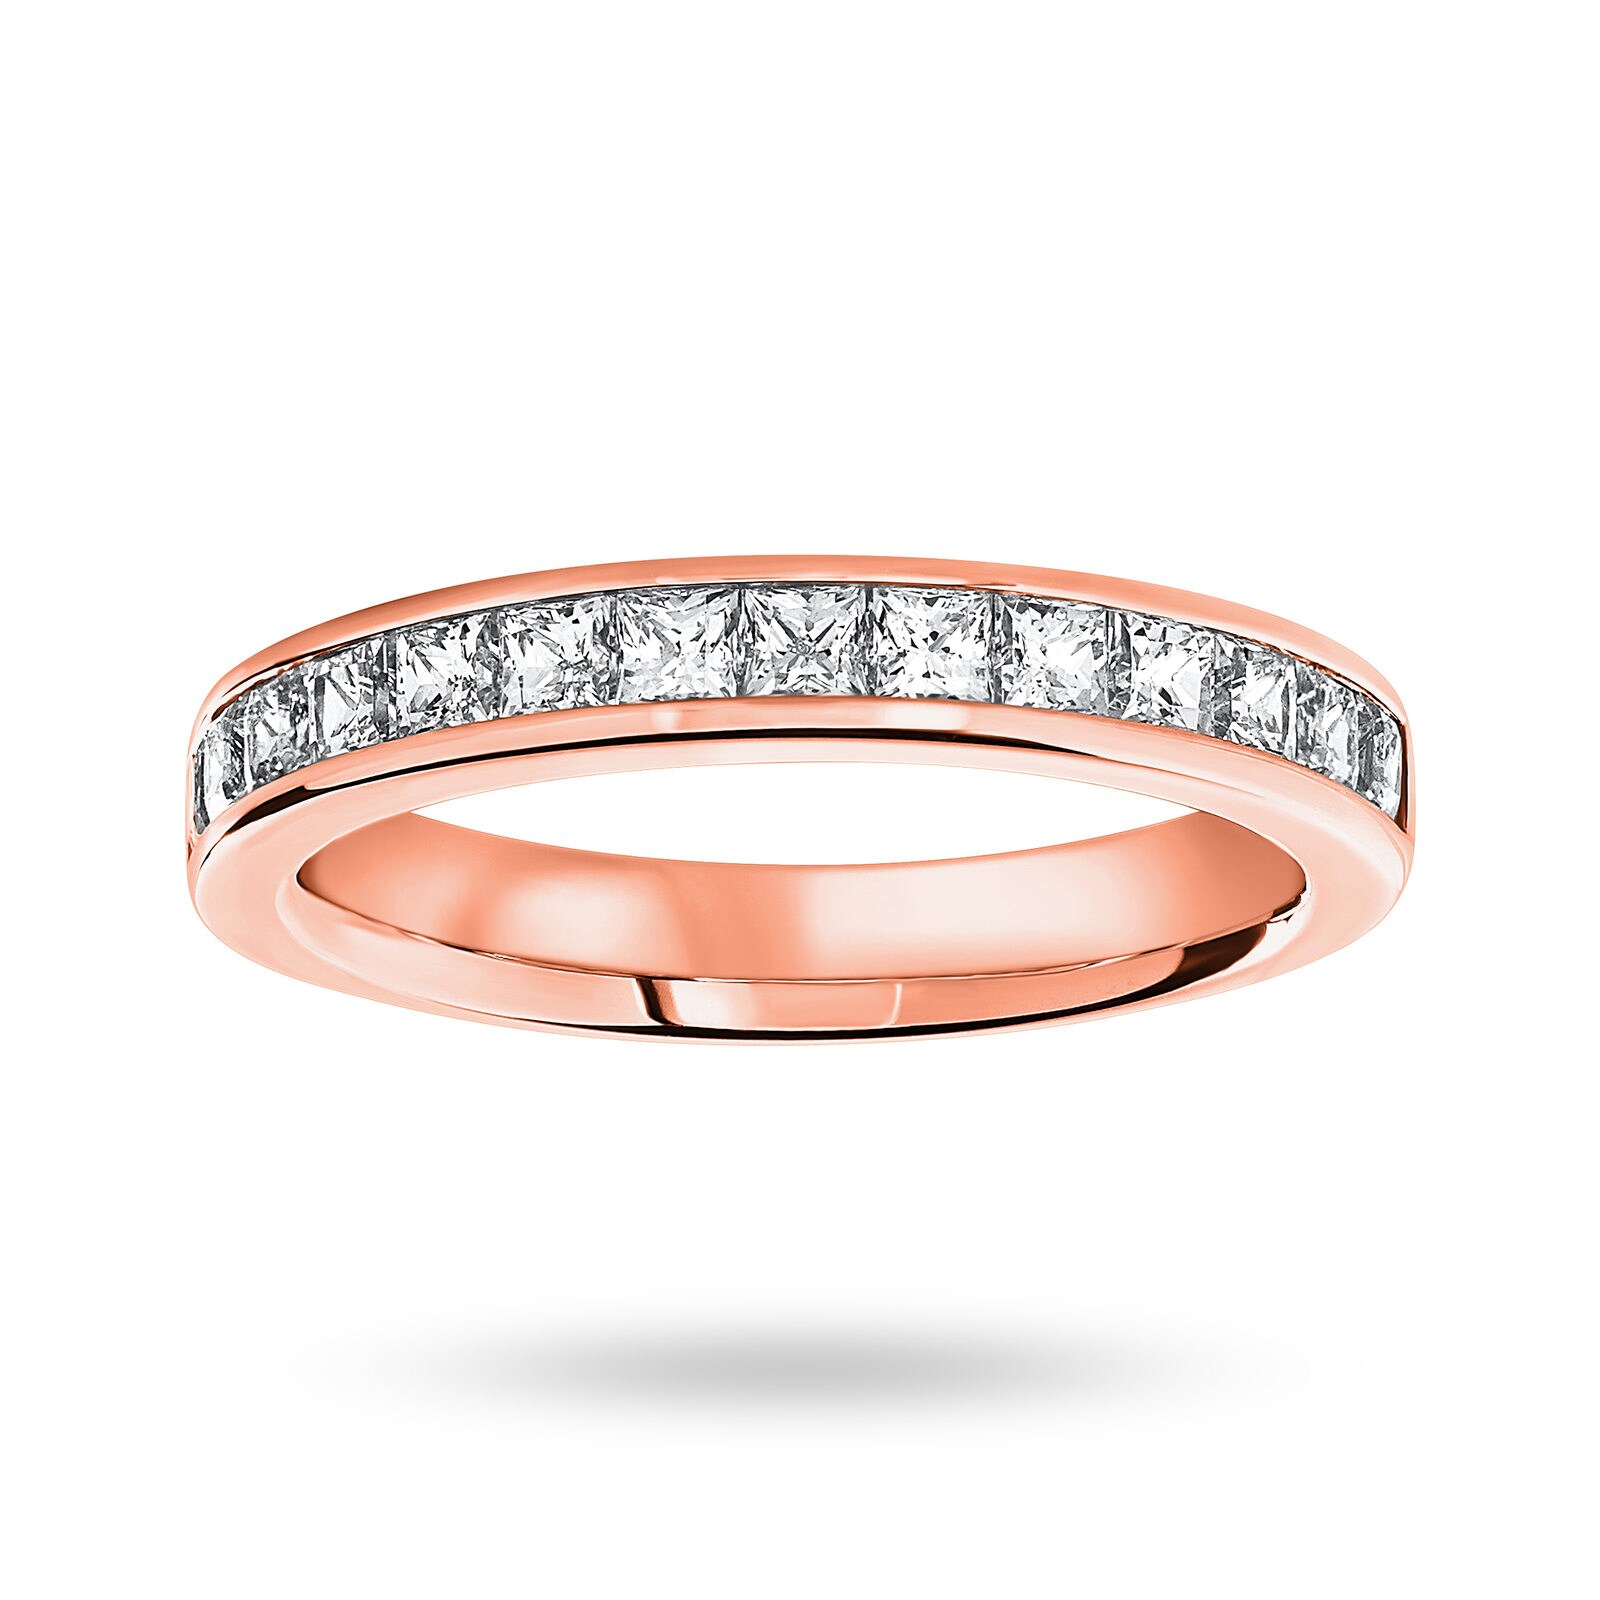 18 Carat Rose Gold 1.00 Carat Princess Cut Half Eternity Ring - Ring Size N